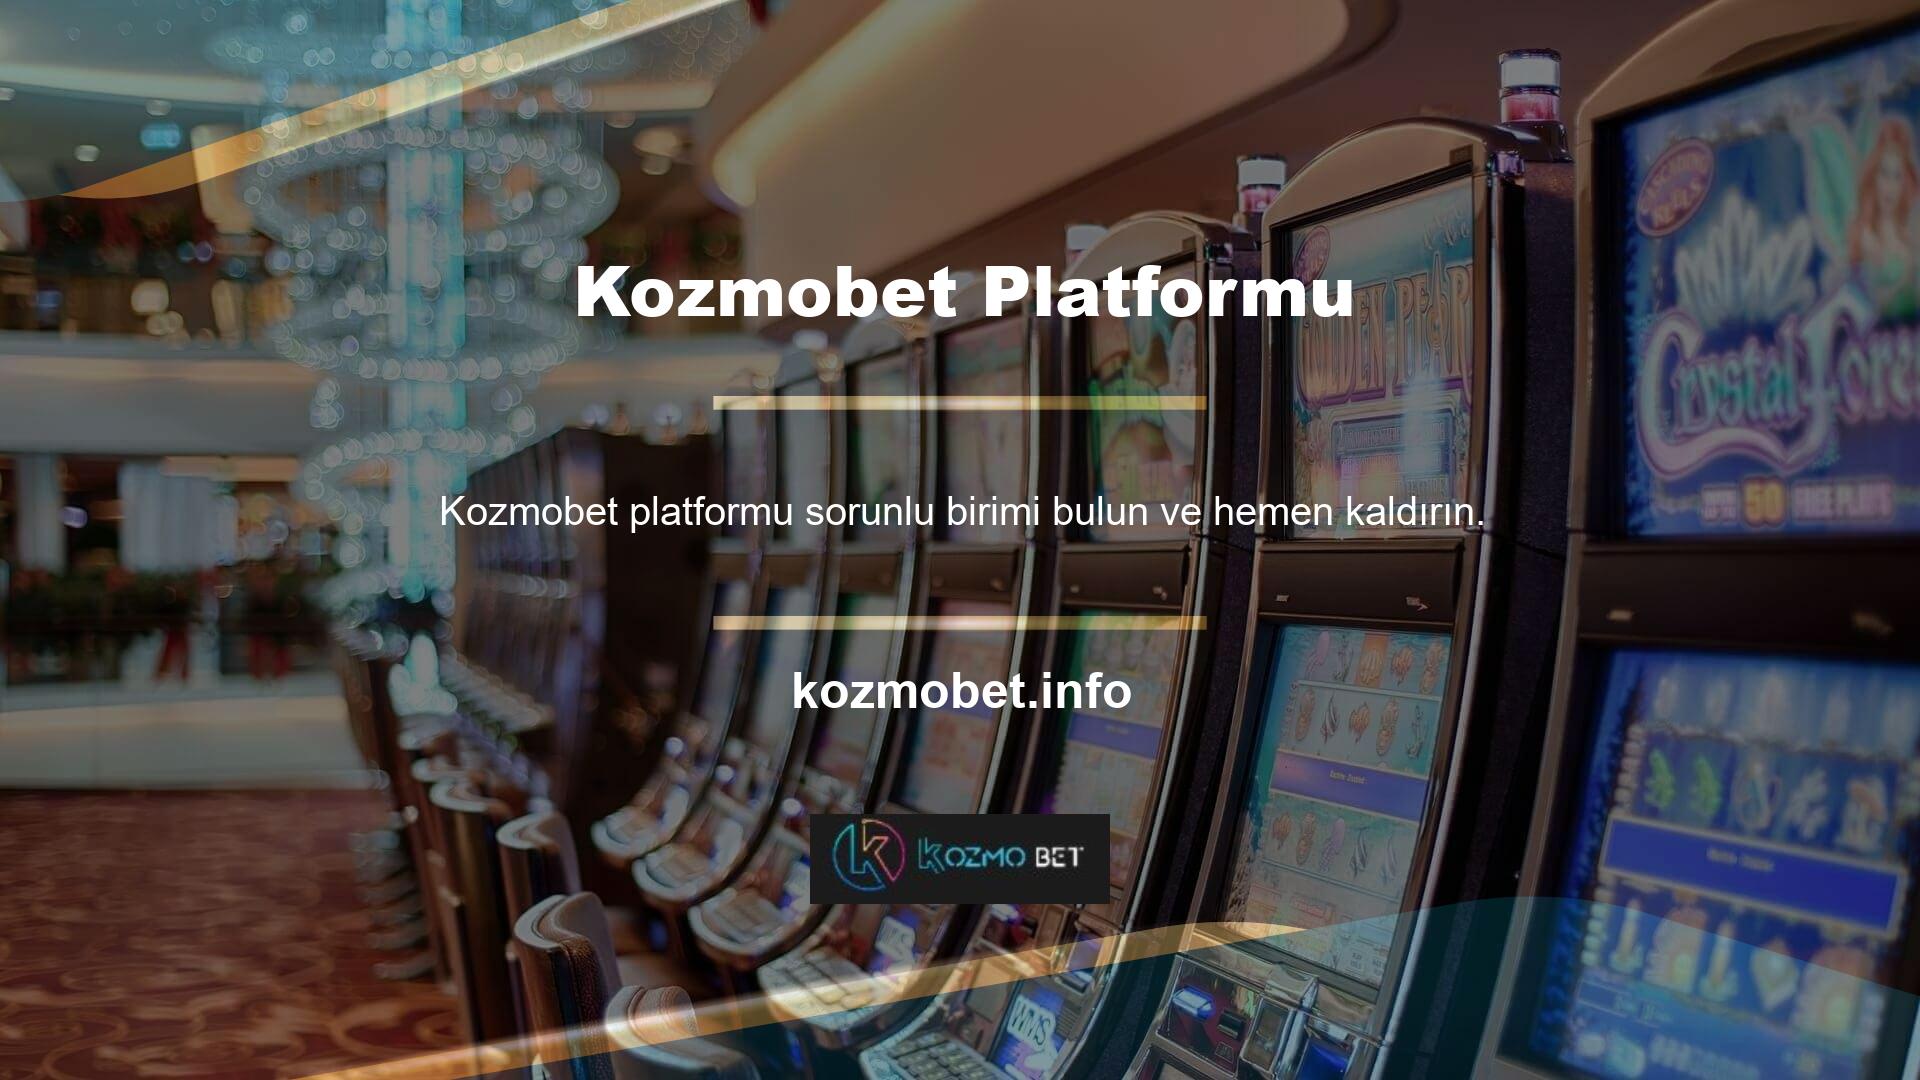 Yayıncılar tarafından sıklıkla değerlendirilen ve hatalı bileşenlerin değiştirilmesi için sürekli gelişen Kozmobet platformu, domain hesabında lider platform olarak ortaya çıkmıştır